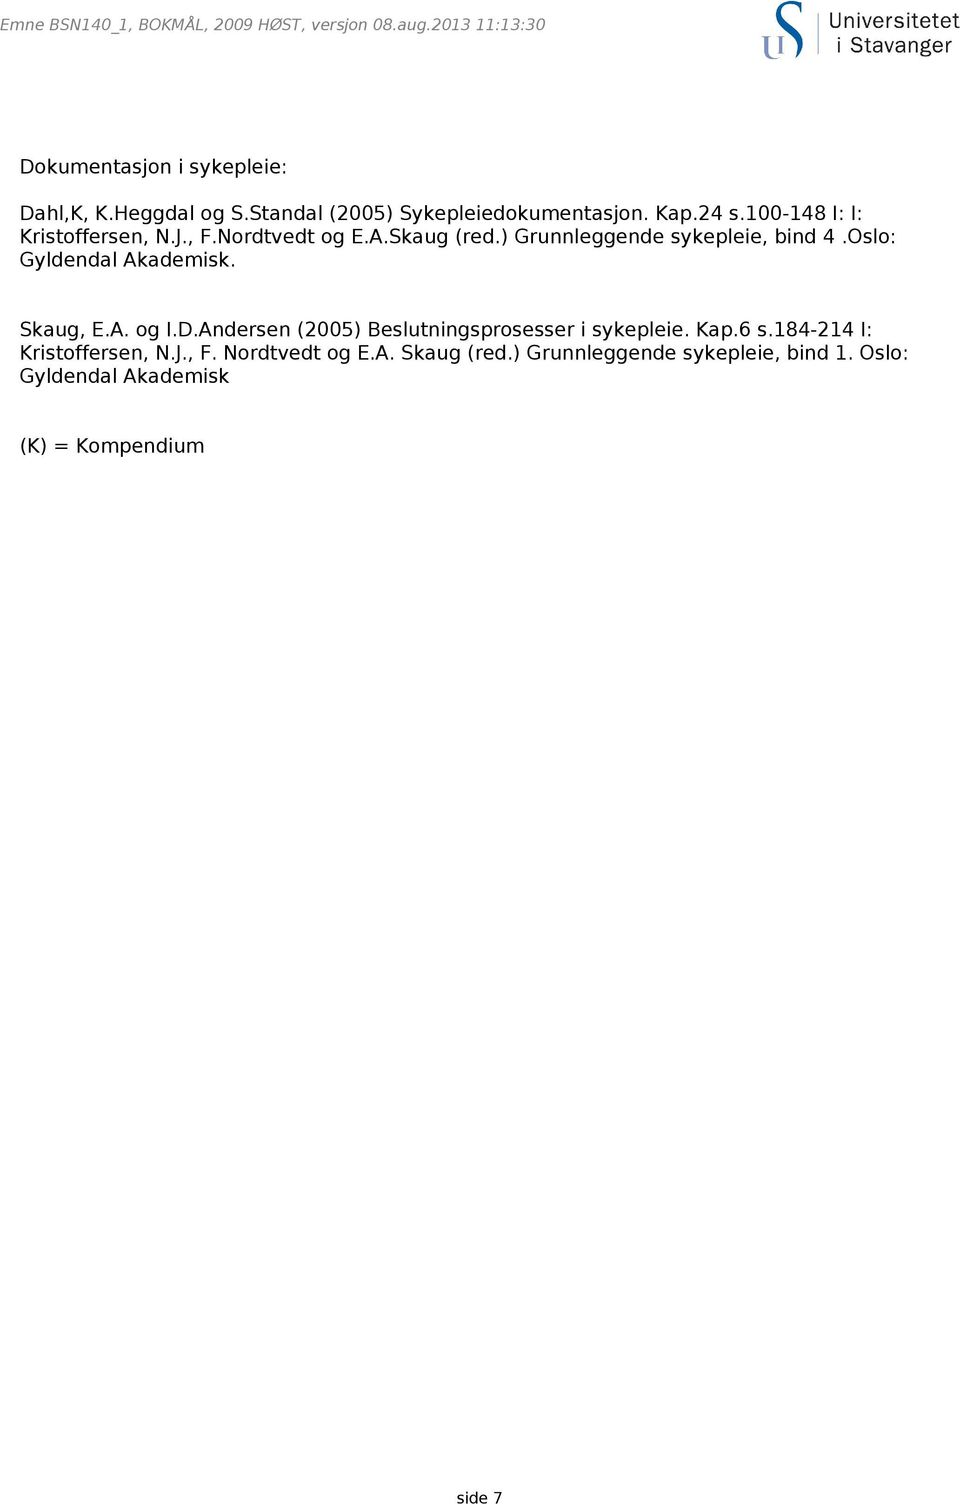 Oslo: Gyldendal Akademisk. Skaug, E.A. og I.D.Andersen (2005) Beslutningsprosesser i sykepleie. Kap.6 s.